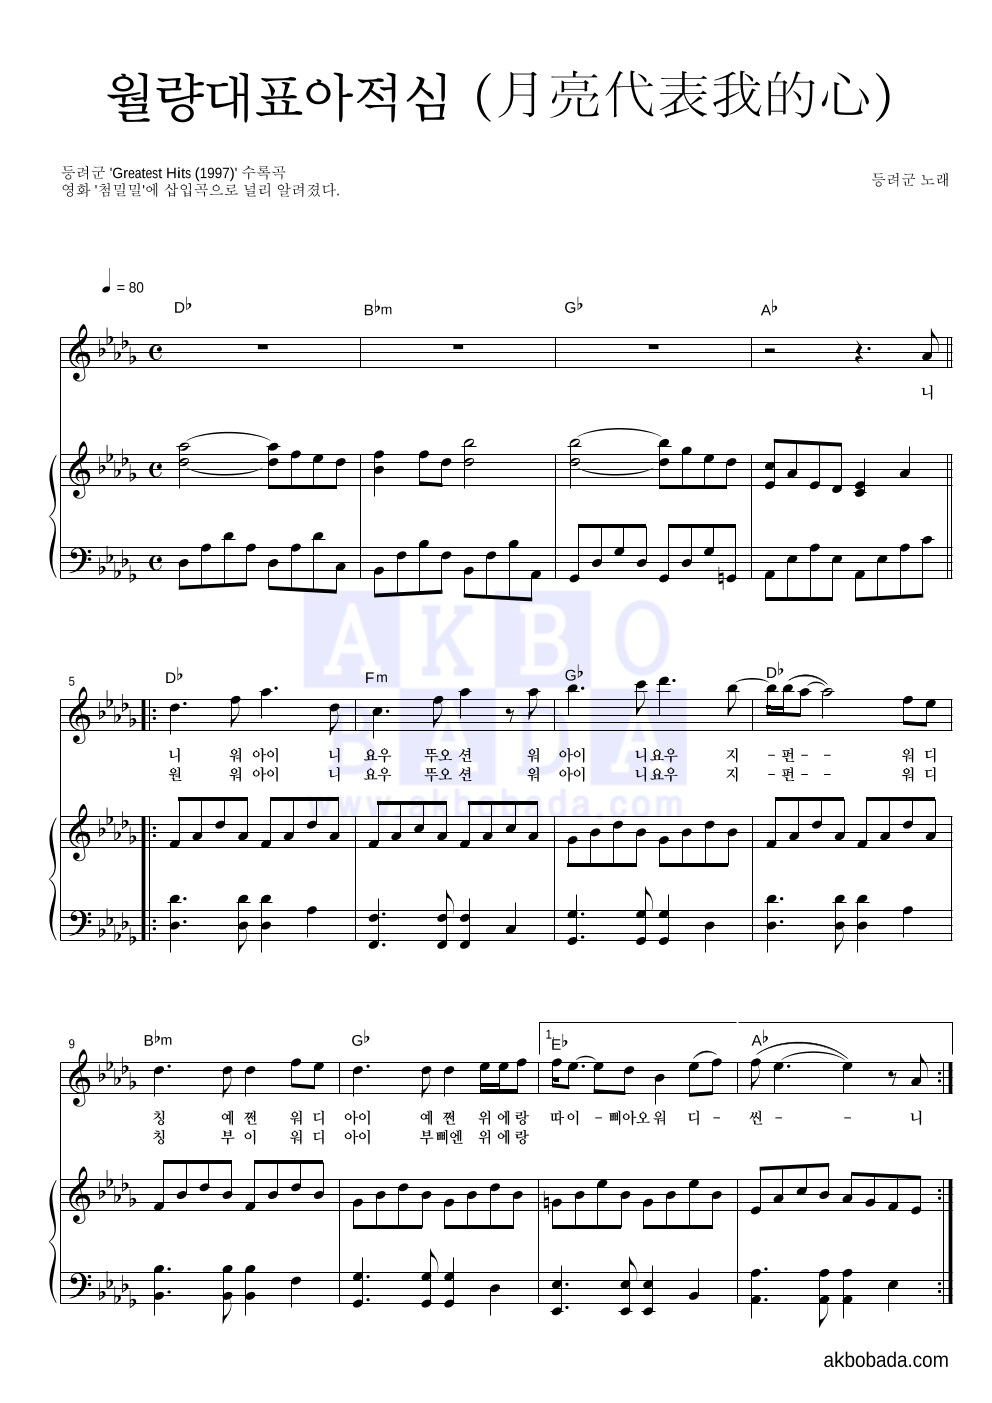 등려군(鄧麗筠) - 월량대표아적심 (月亮代表我的心) 피아노 3단 악보 